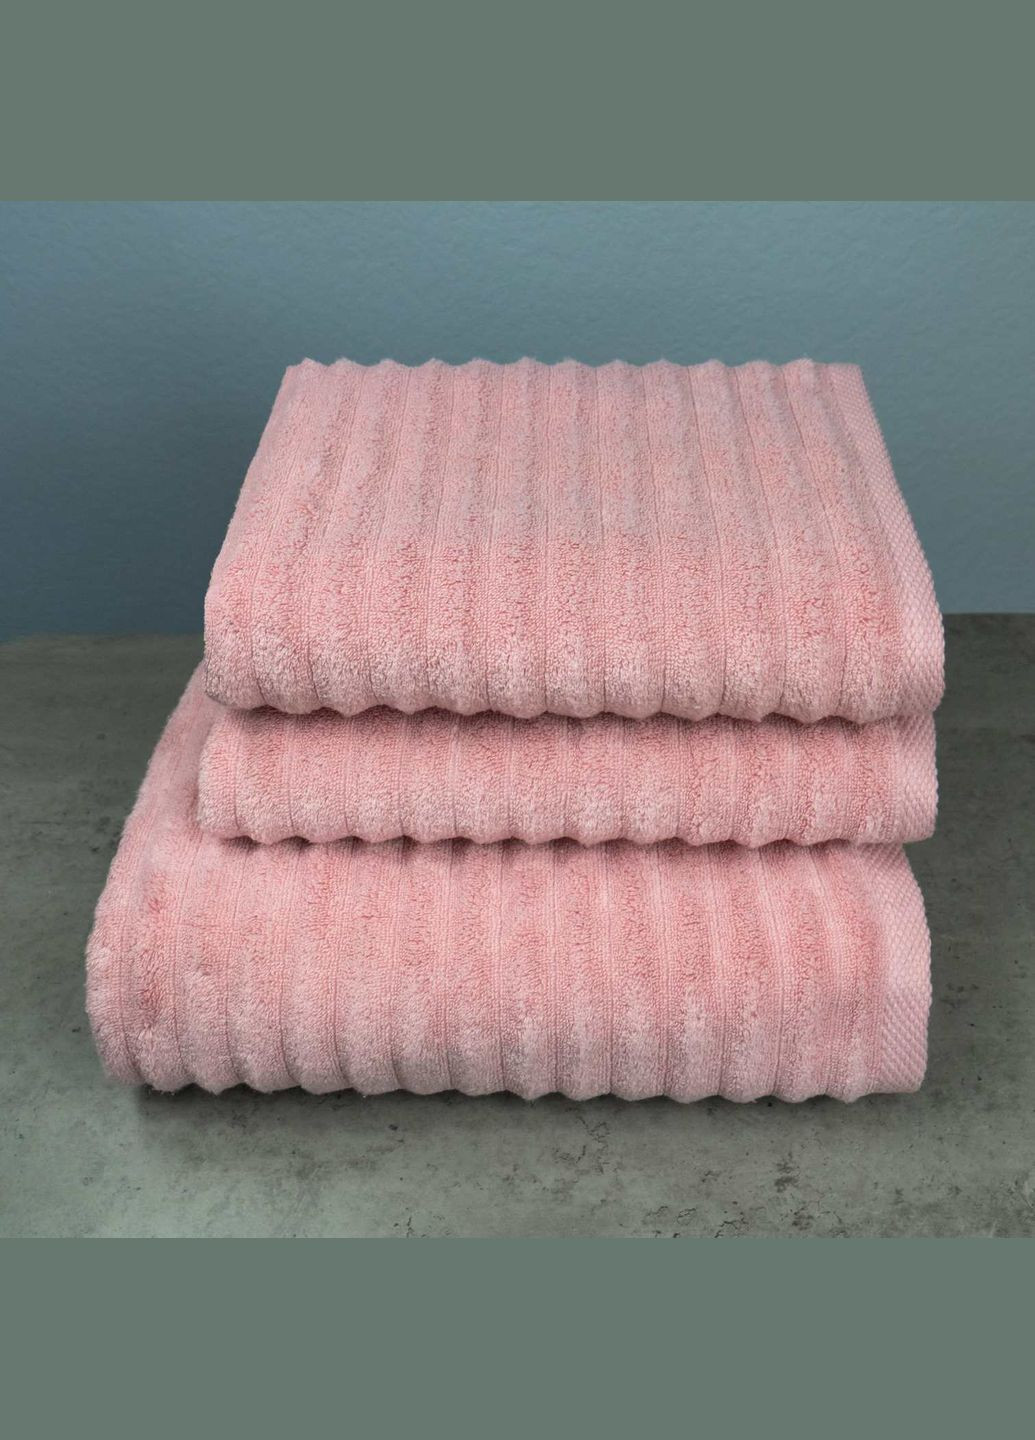 GM Textile набор махровых полотенец зеро твист 3шт 50x90см, 50x90см, 70x140см 550г/м2 () розовый производство -